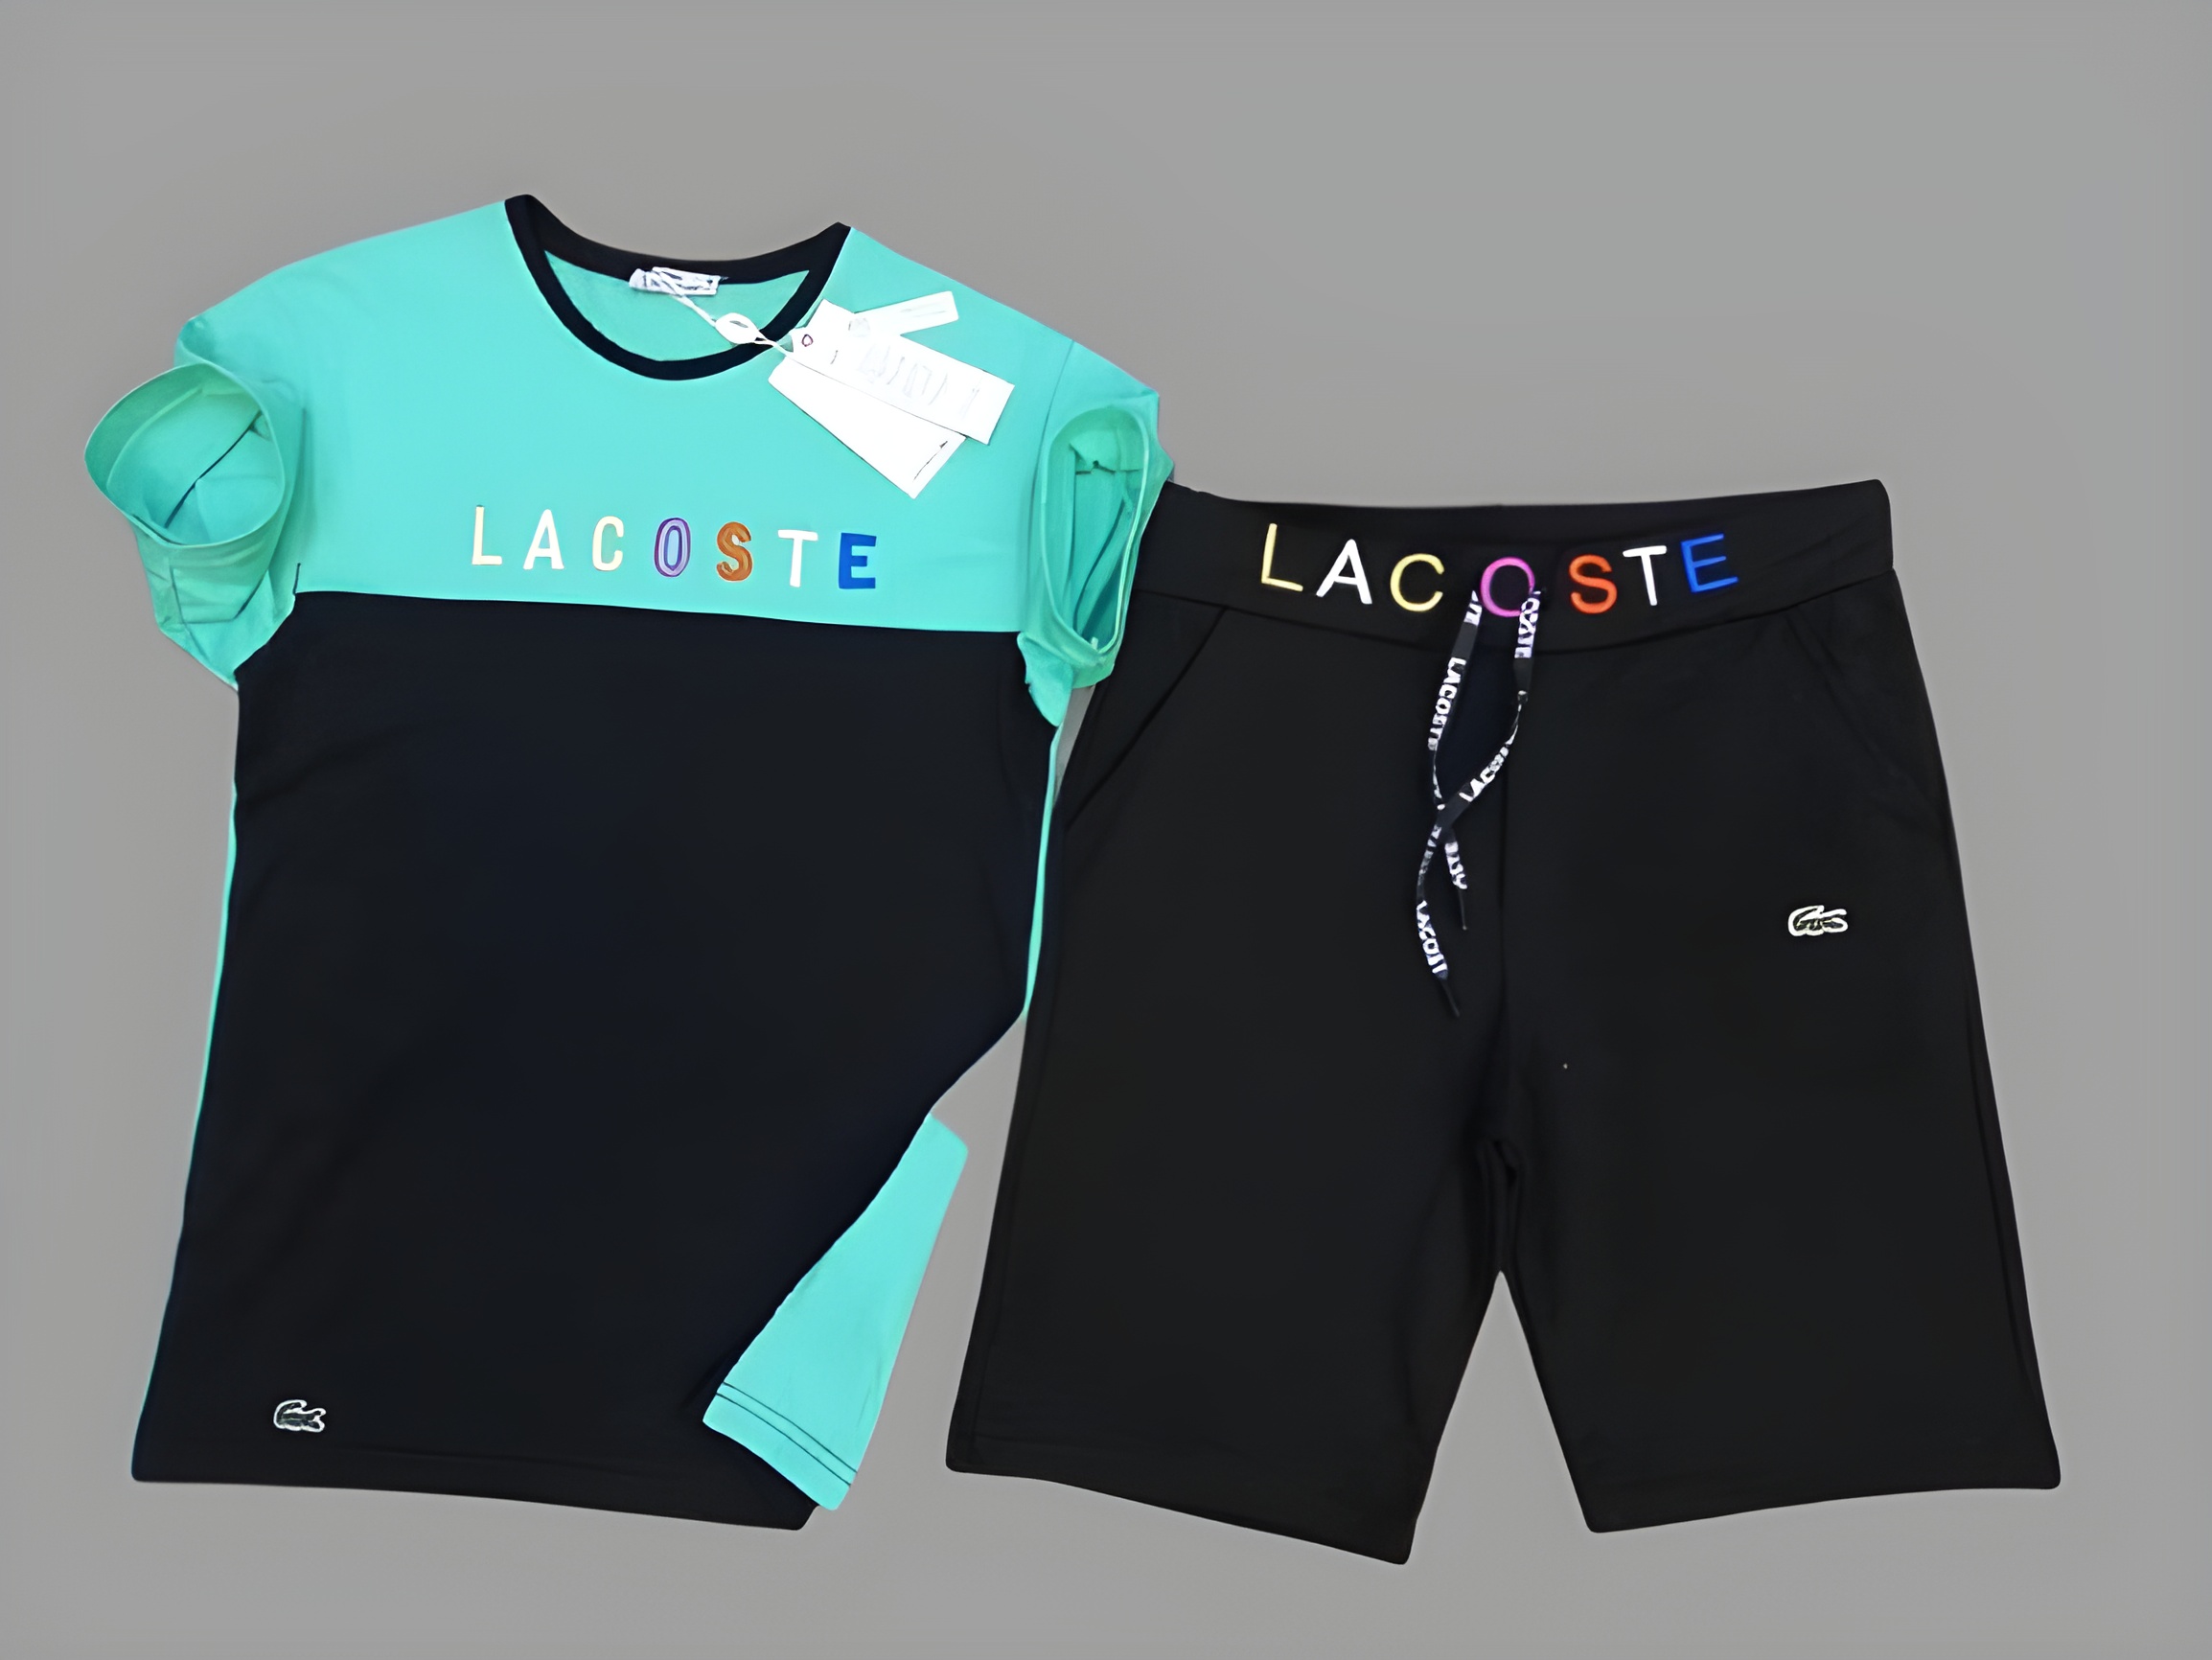 Lacoste Shorts Set